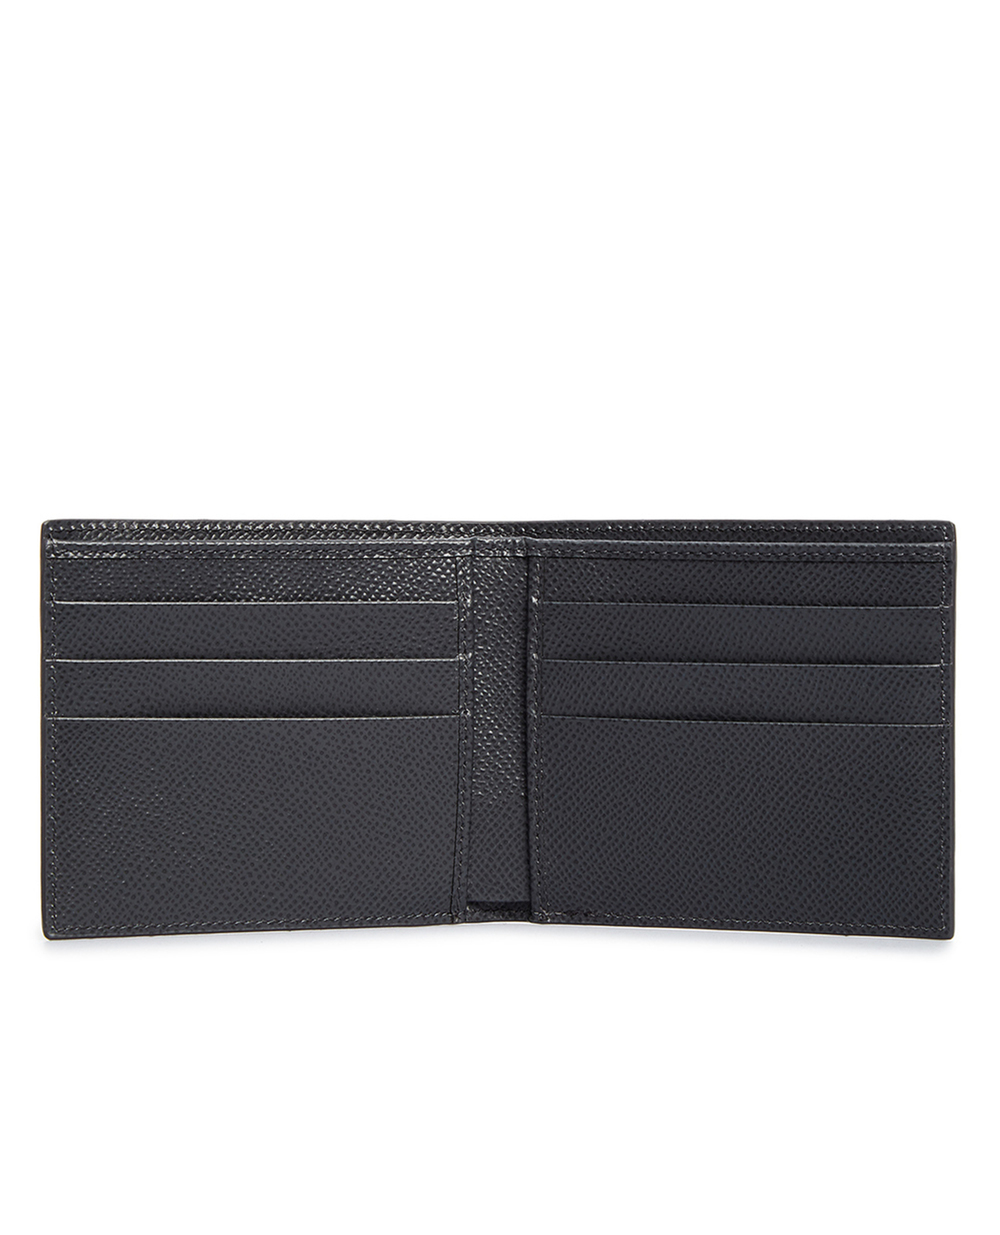 Кожаный кошелек Dolce&Gabbana BP1321-AZ602, серый цвет • Купить в интернет-магазине Kameron